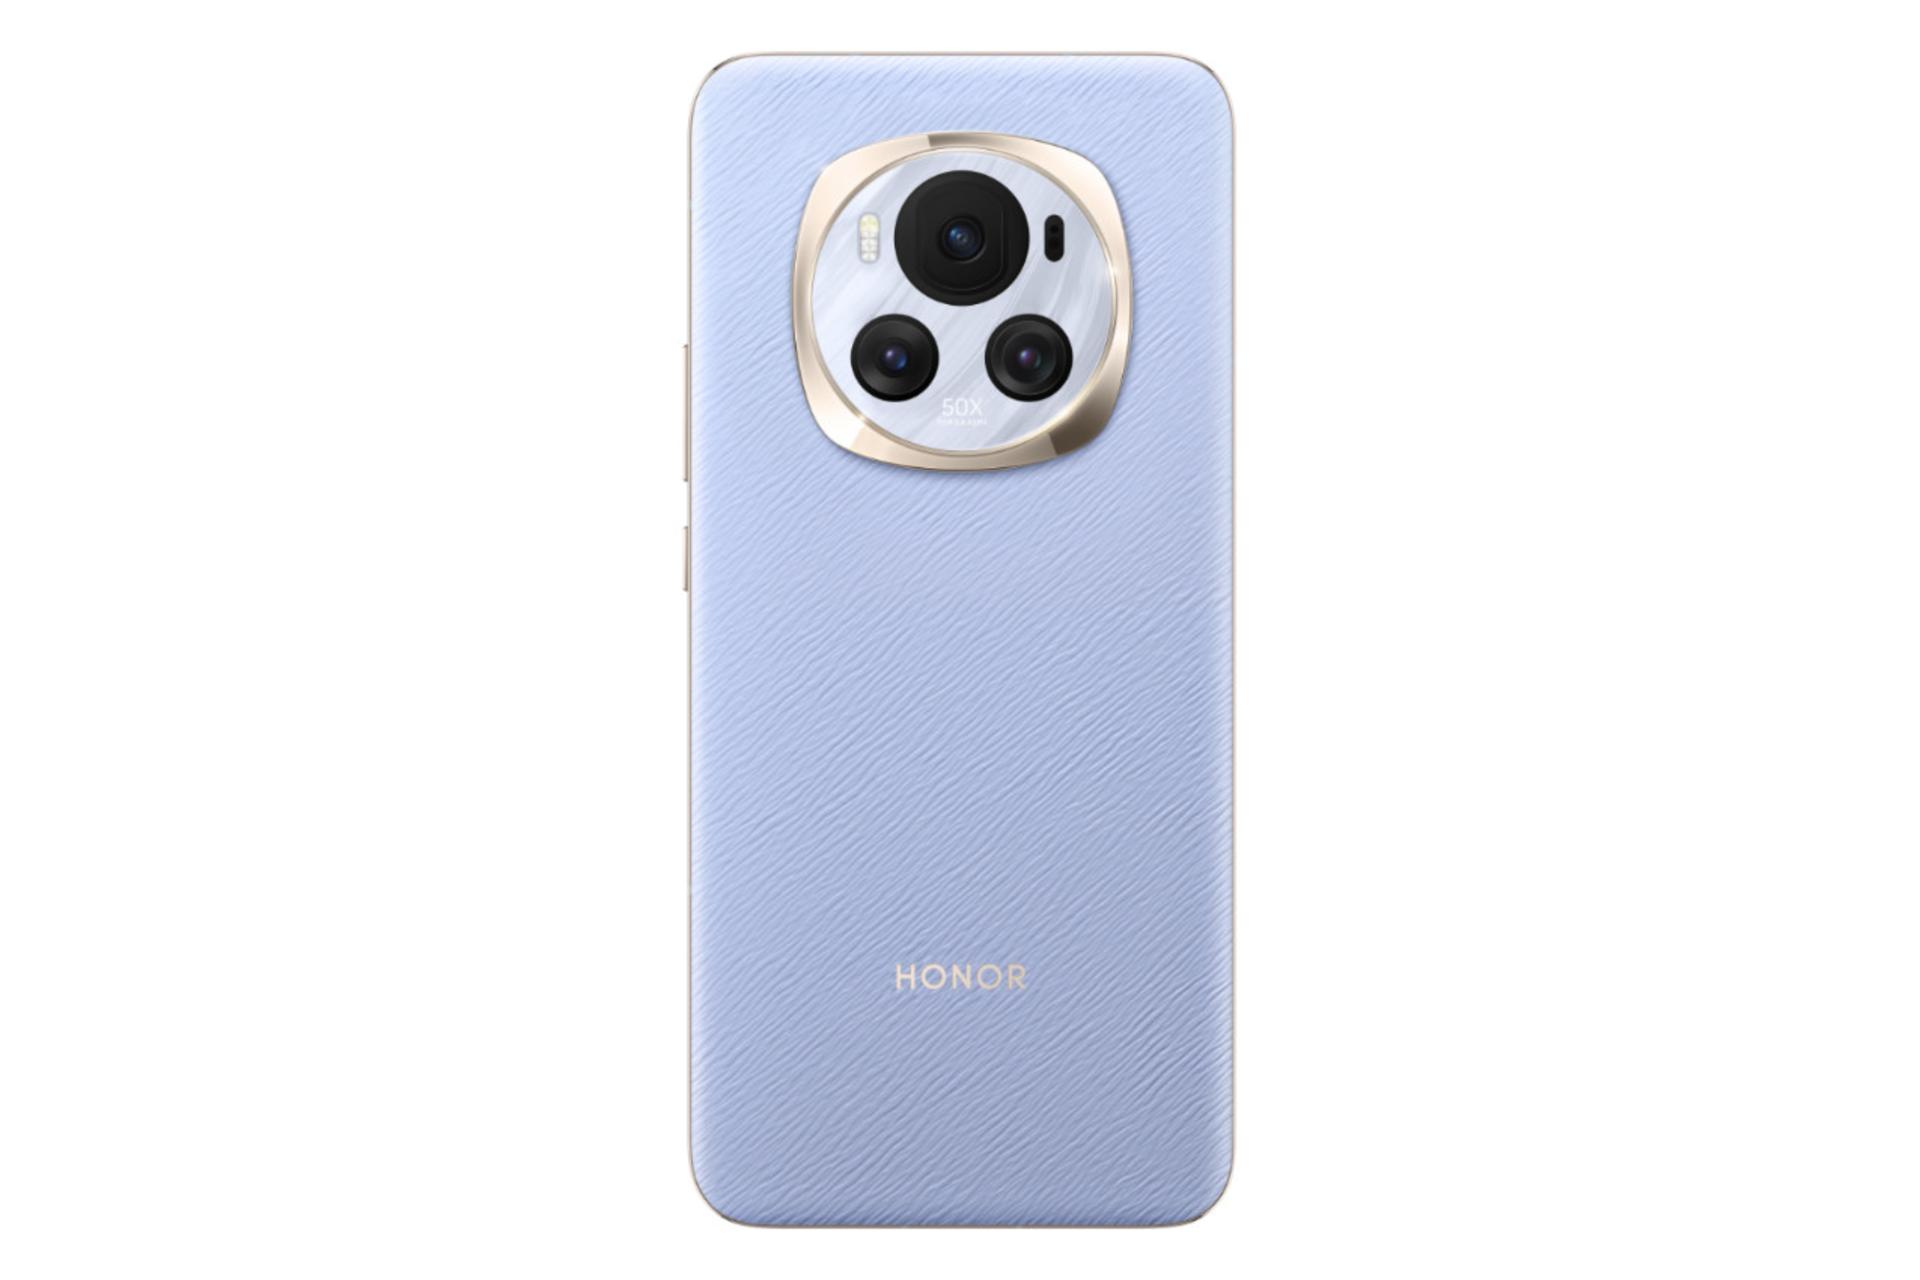 پنل پشت و چینش دوربین گوشی موبایل آنر مجیک 6 بنفش / HONOR Magic6